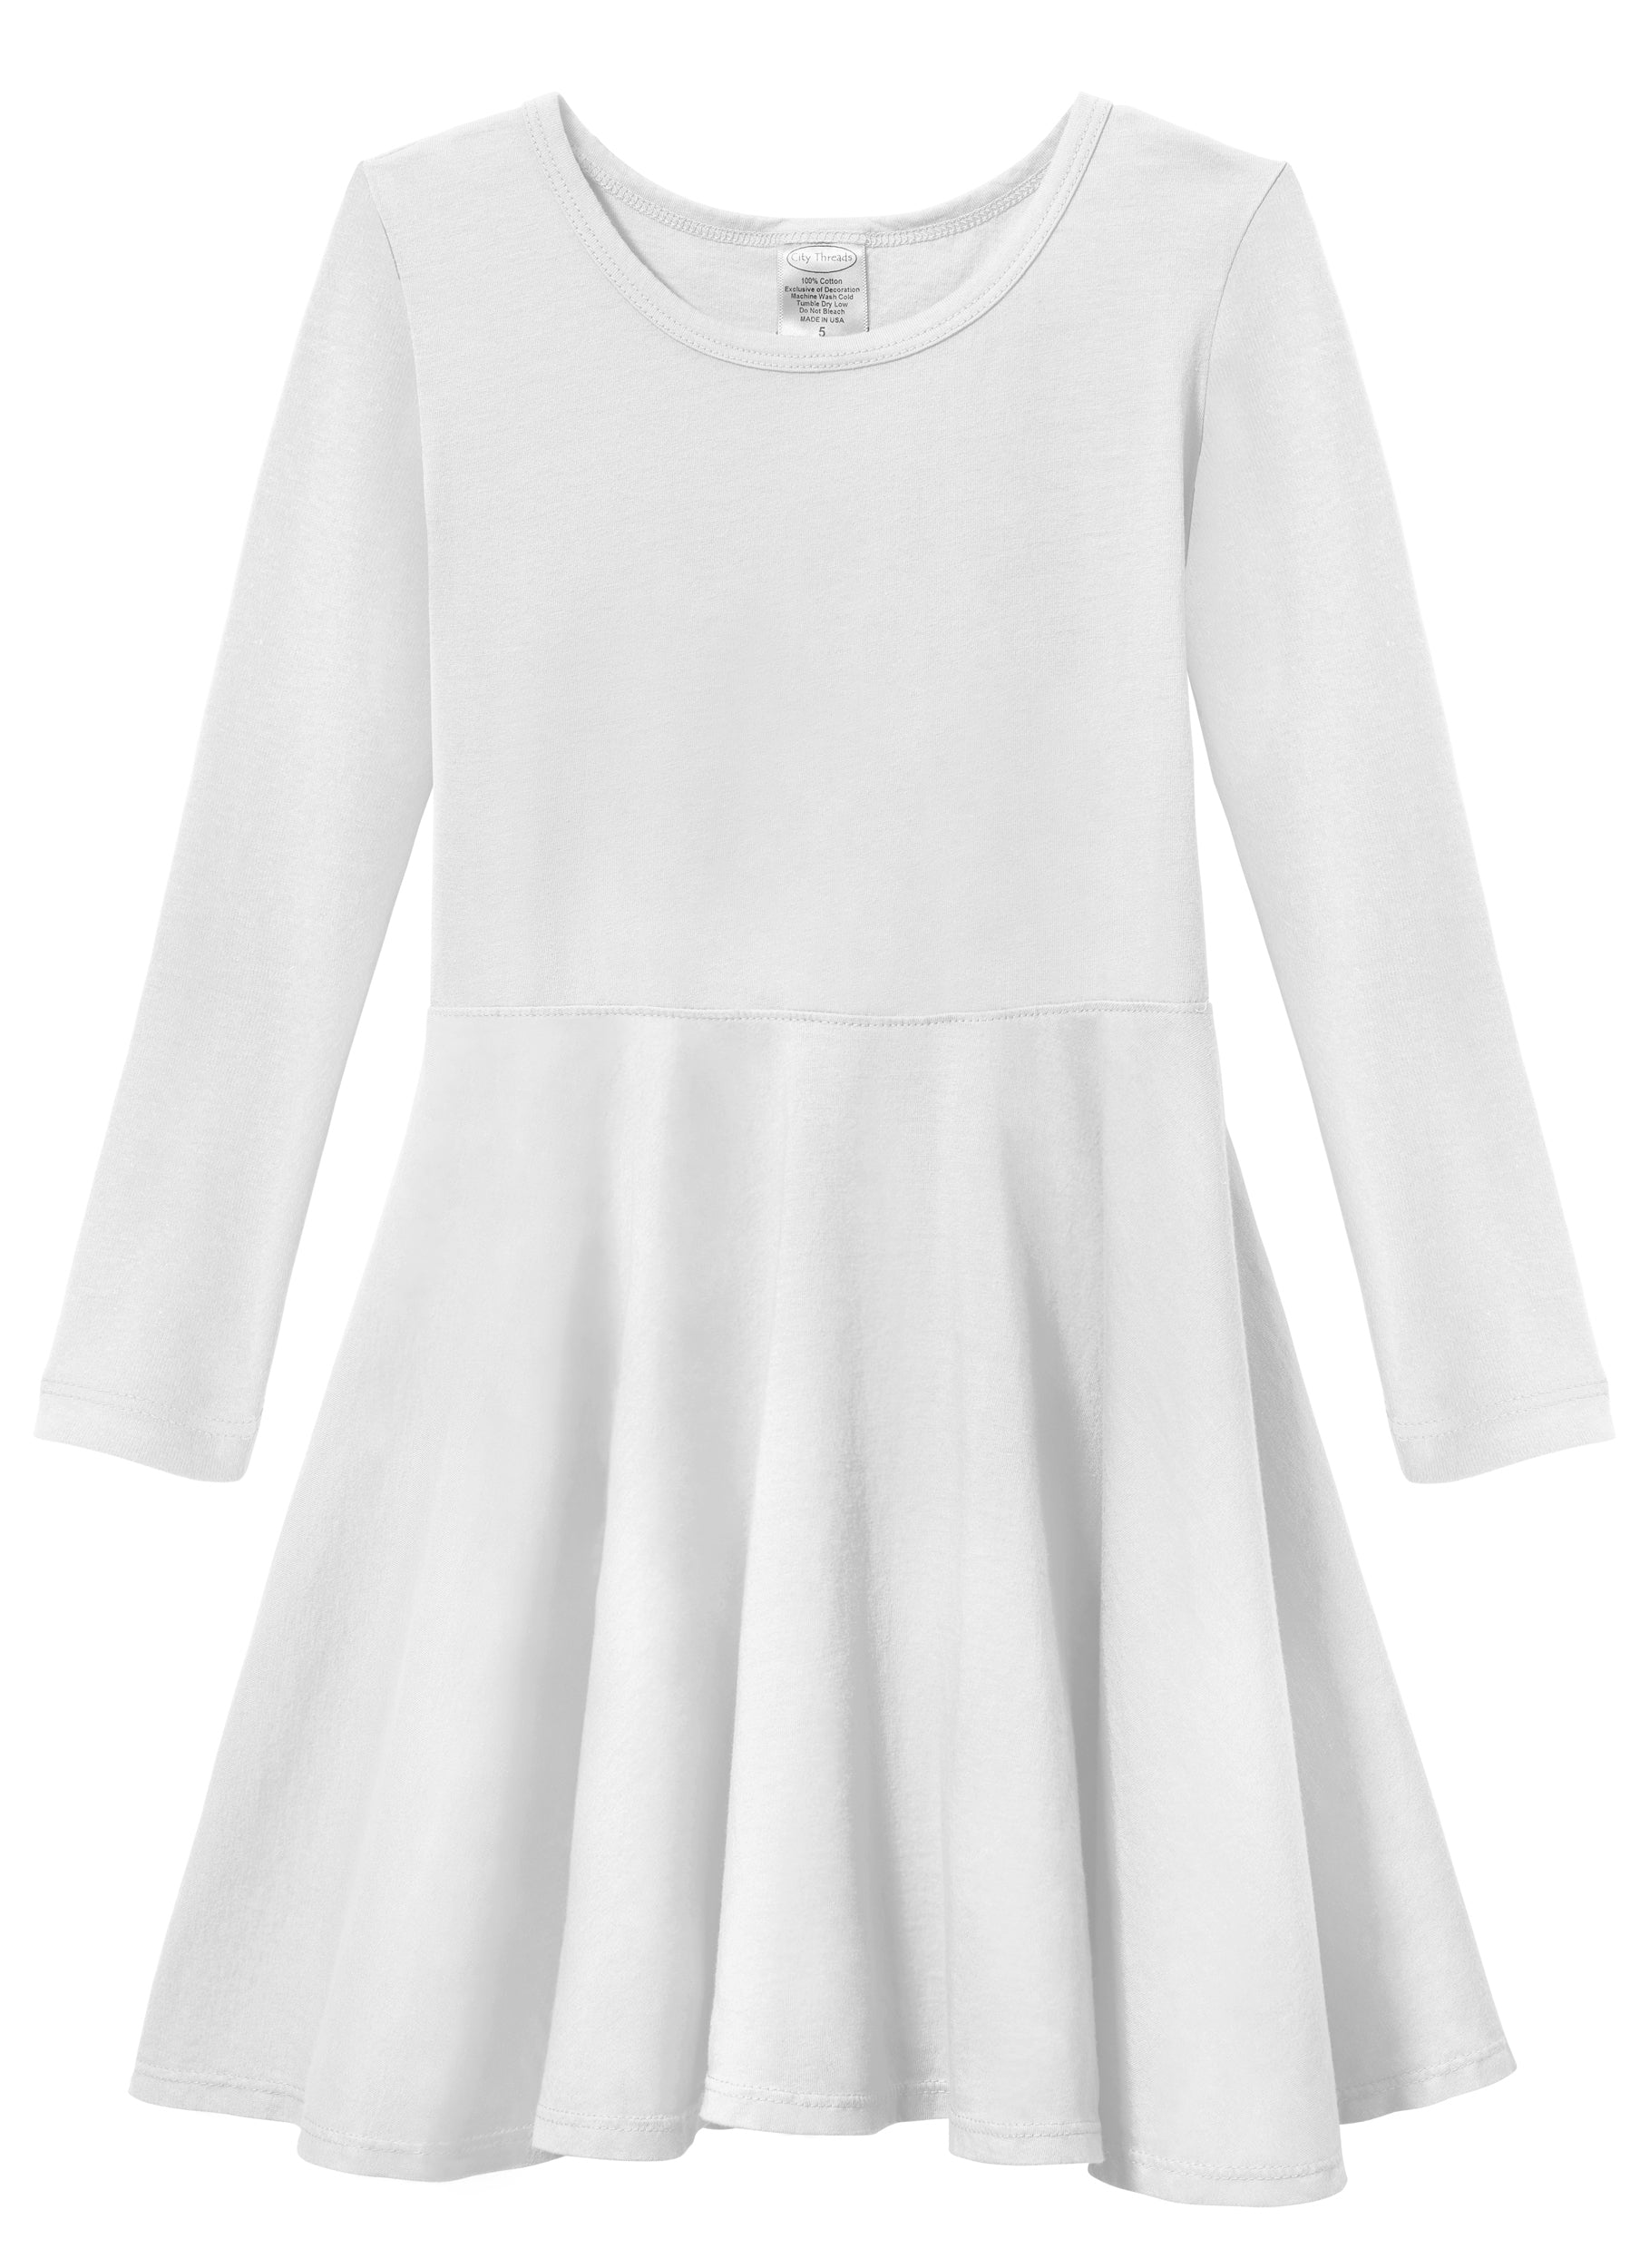 Girls White Dresses